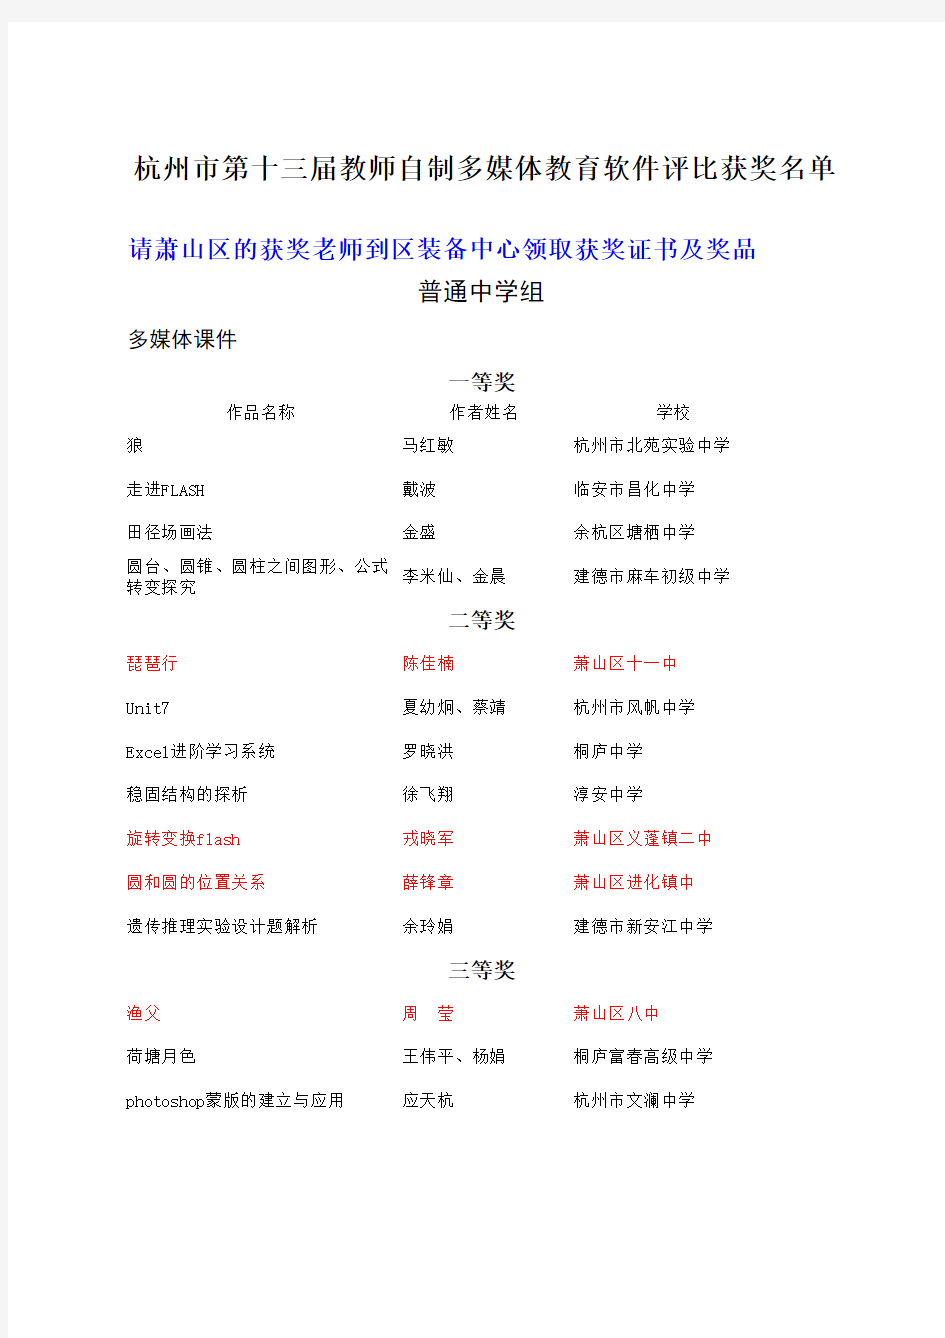 杭州市第十三届中小学教师自制多媒体教育软件评比活动